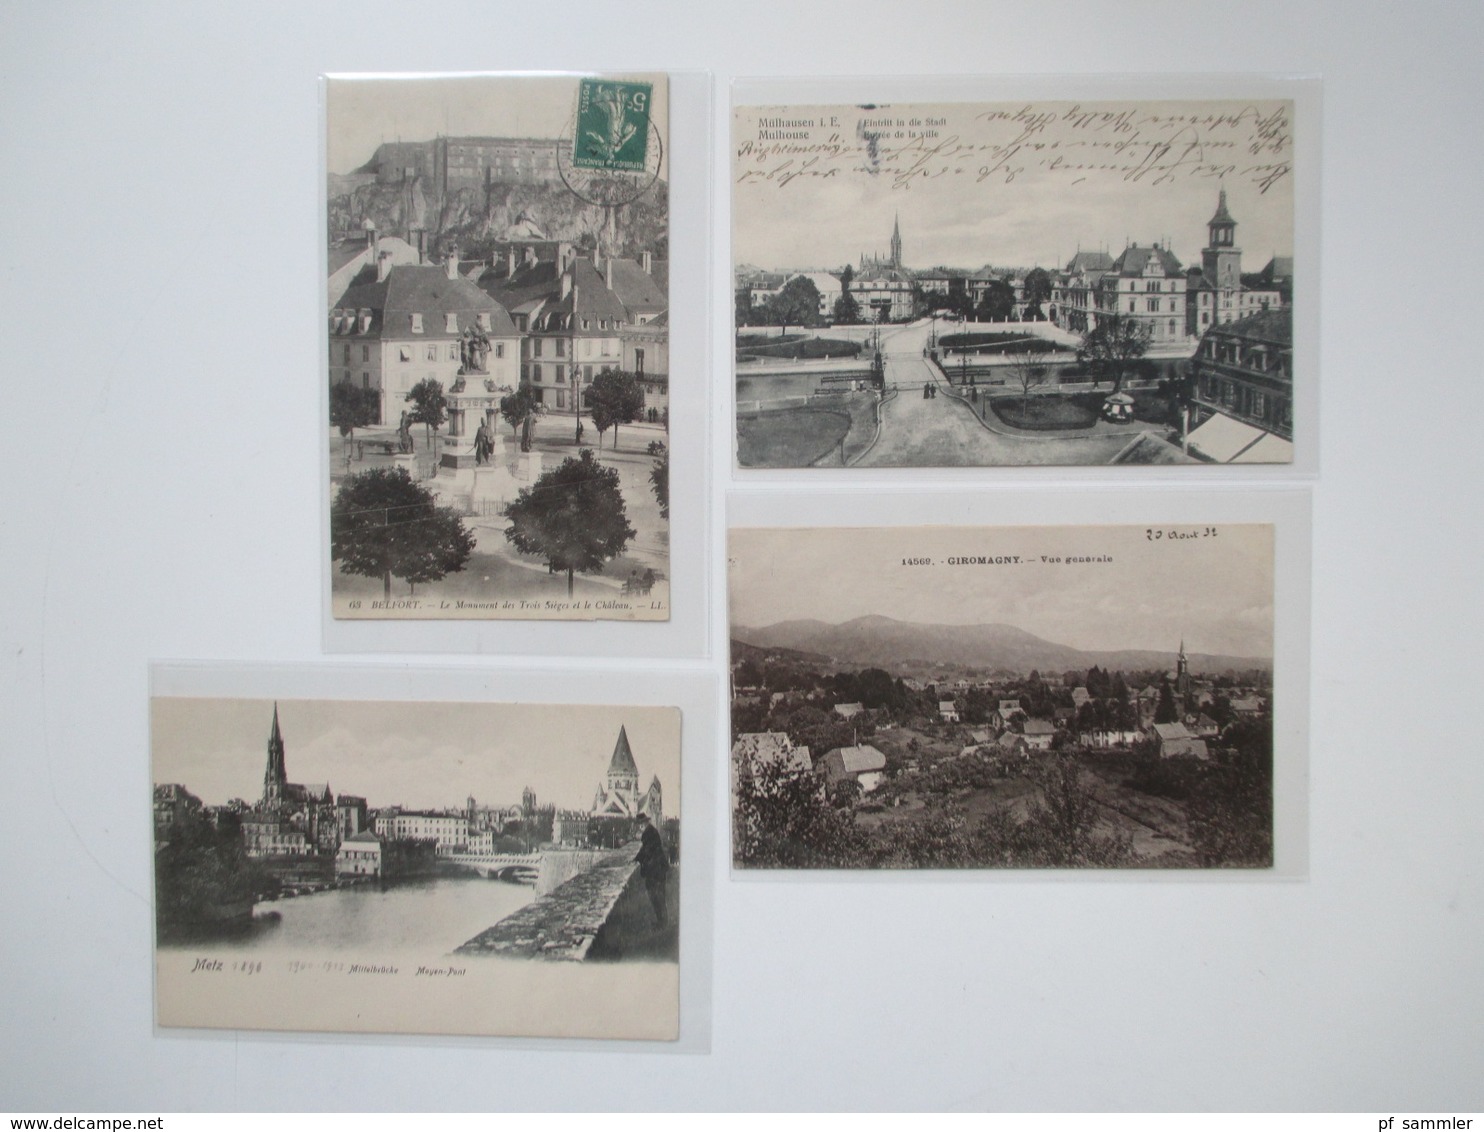 AK Deutsches Reich / Frankreich Elsass u. Lothringen 208 Karten. Ab ca. 1900 - 30er Jahre! Tolle Karten / Motive!!